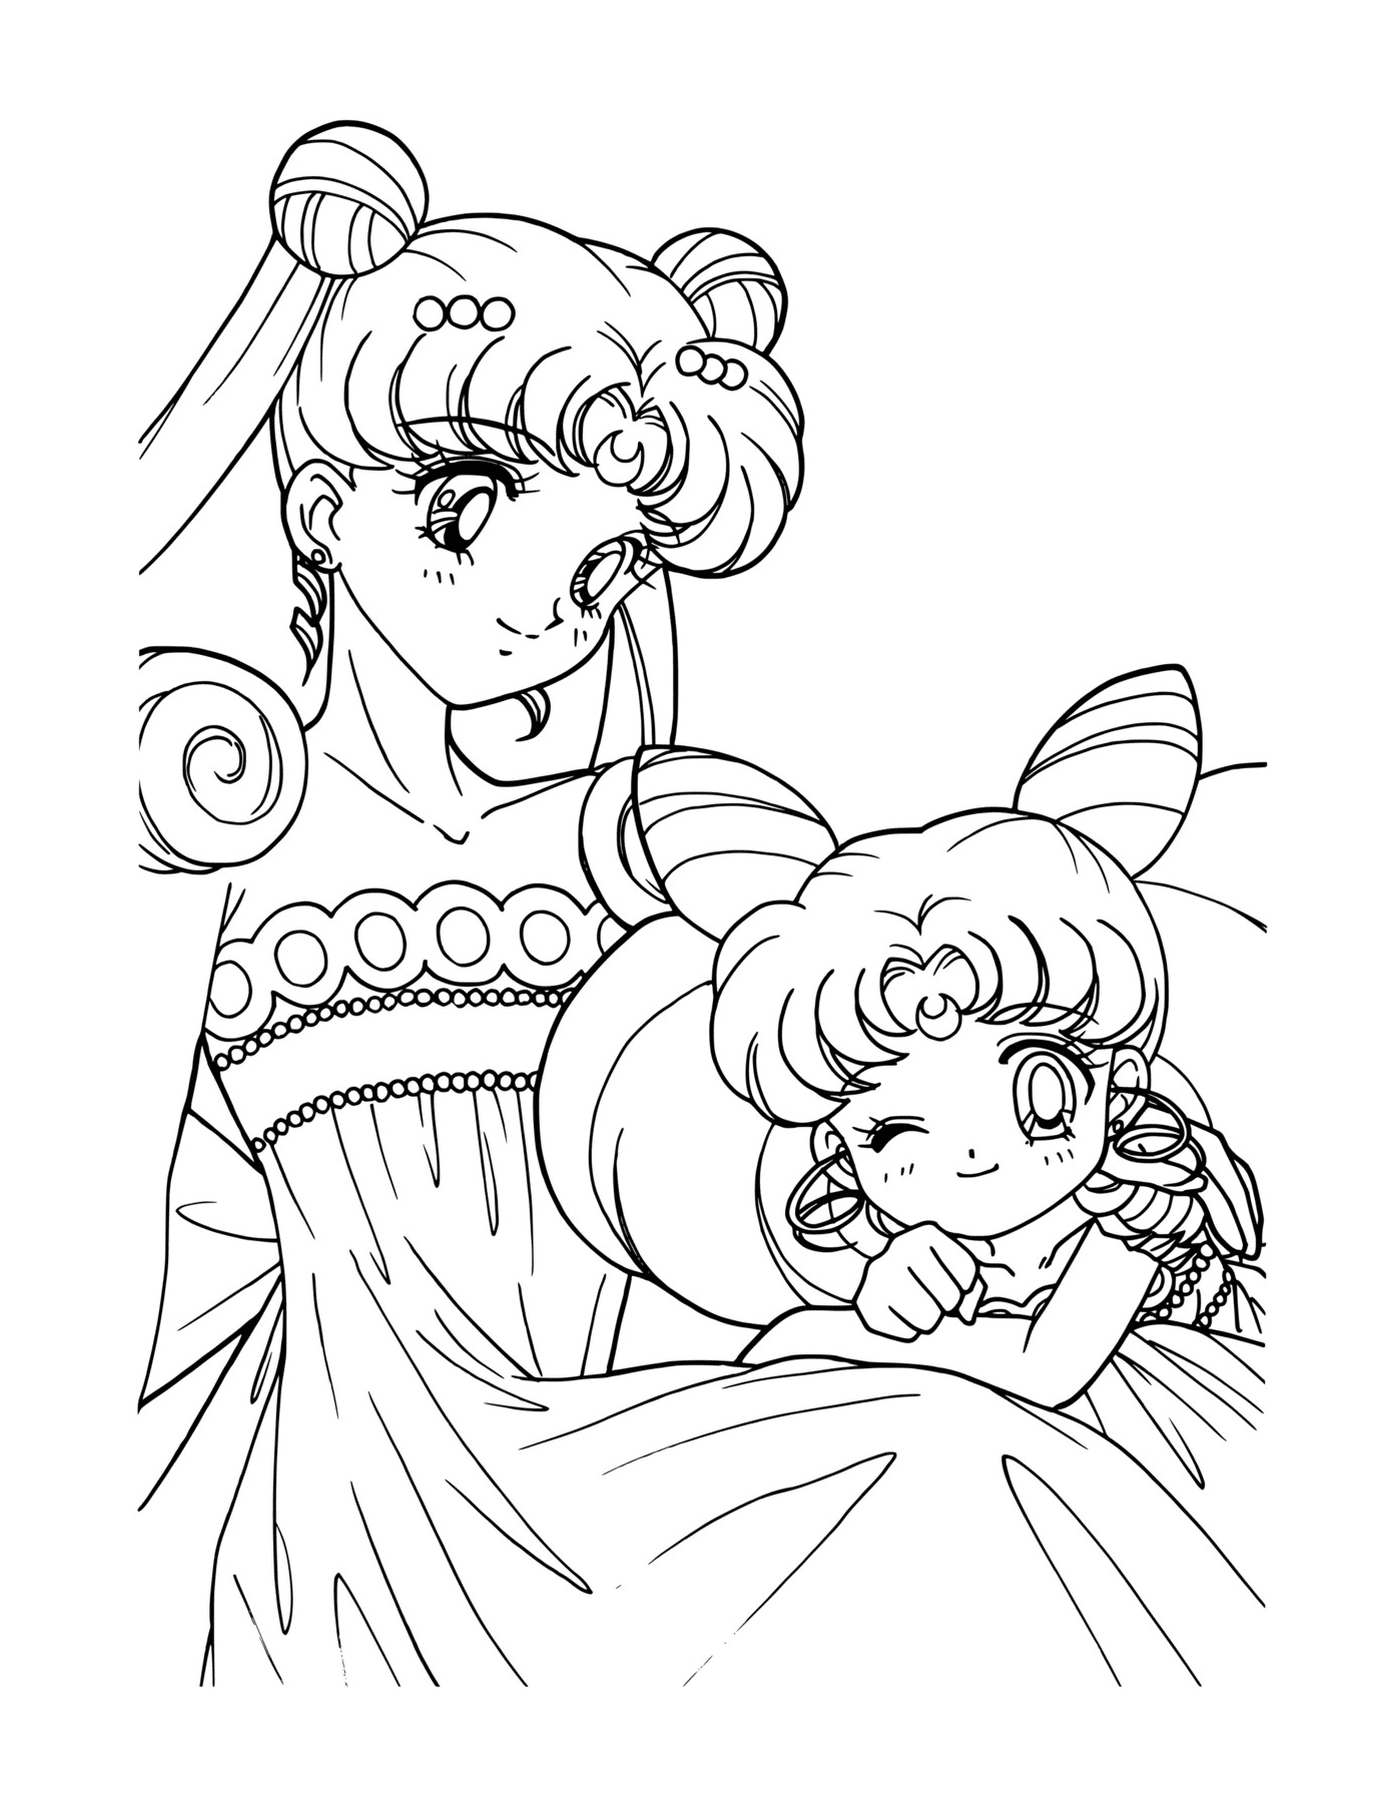  Sailor Moon and his baby princess 